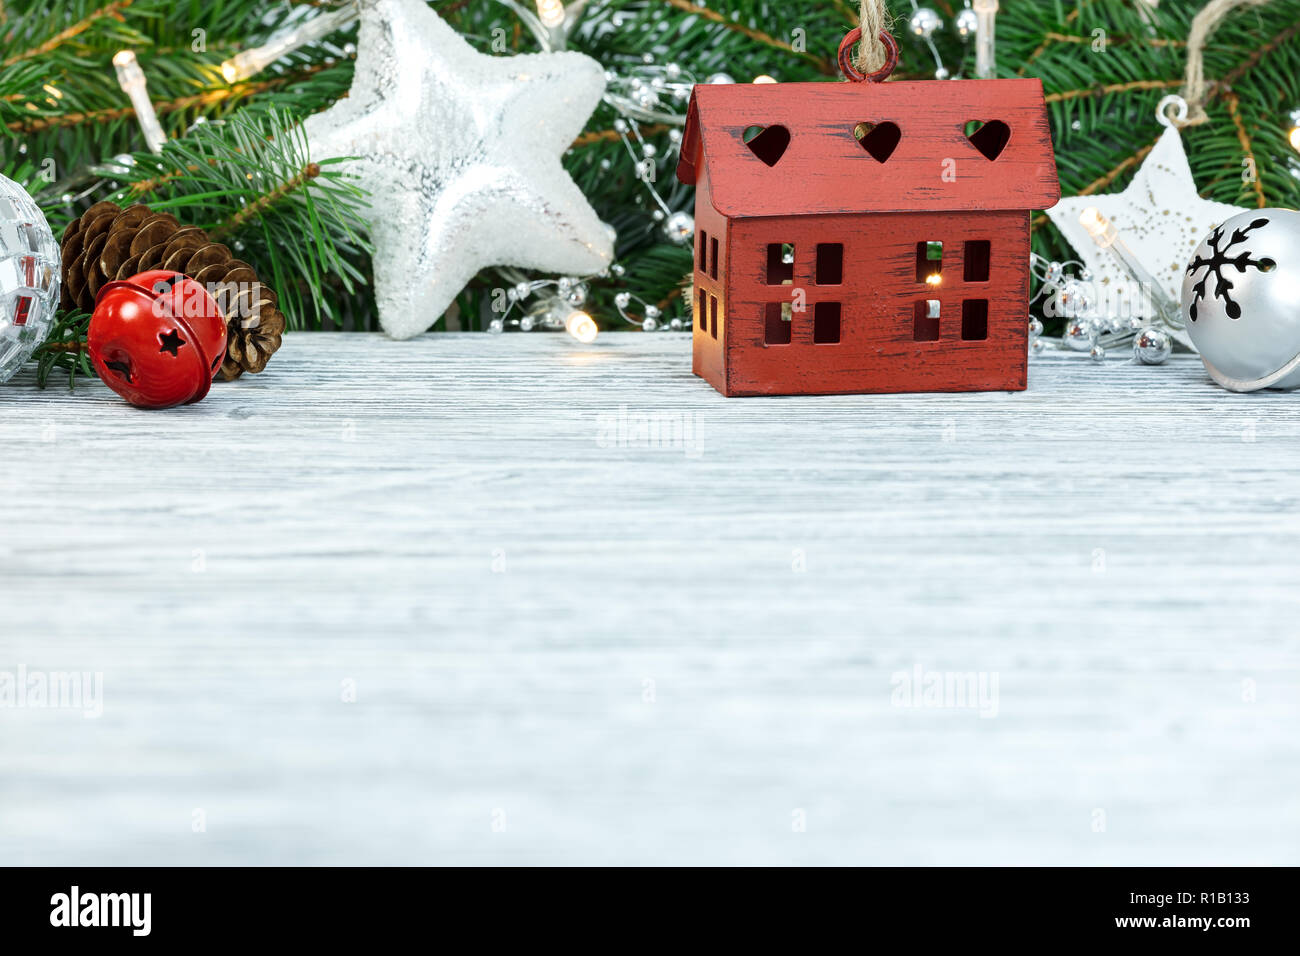 Holztisch mit Weihnachten Fir Tree Branch, Glas, Sterne, Lichter und Jingle bells eingerichtet Stockfoto